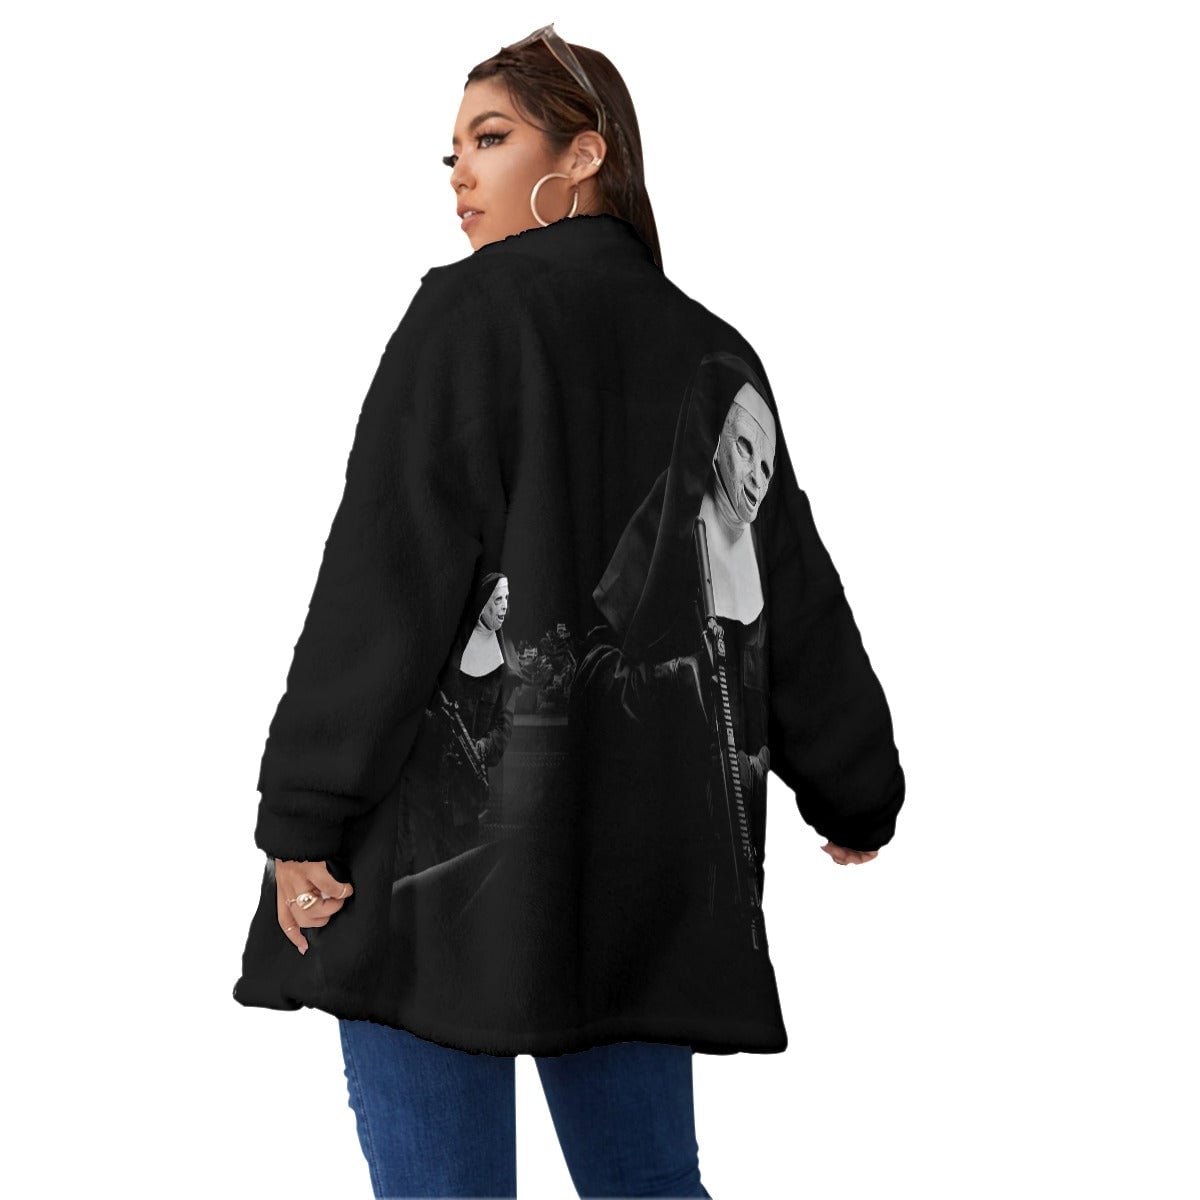 Mobster Boston Massachusetts Art Women’s Borg Fleece Oversize Jacket